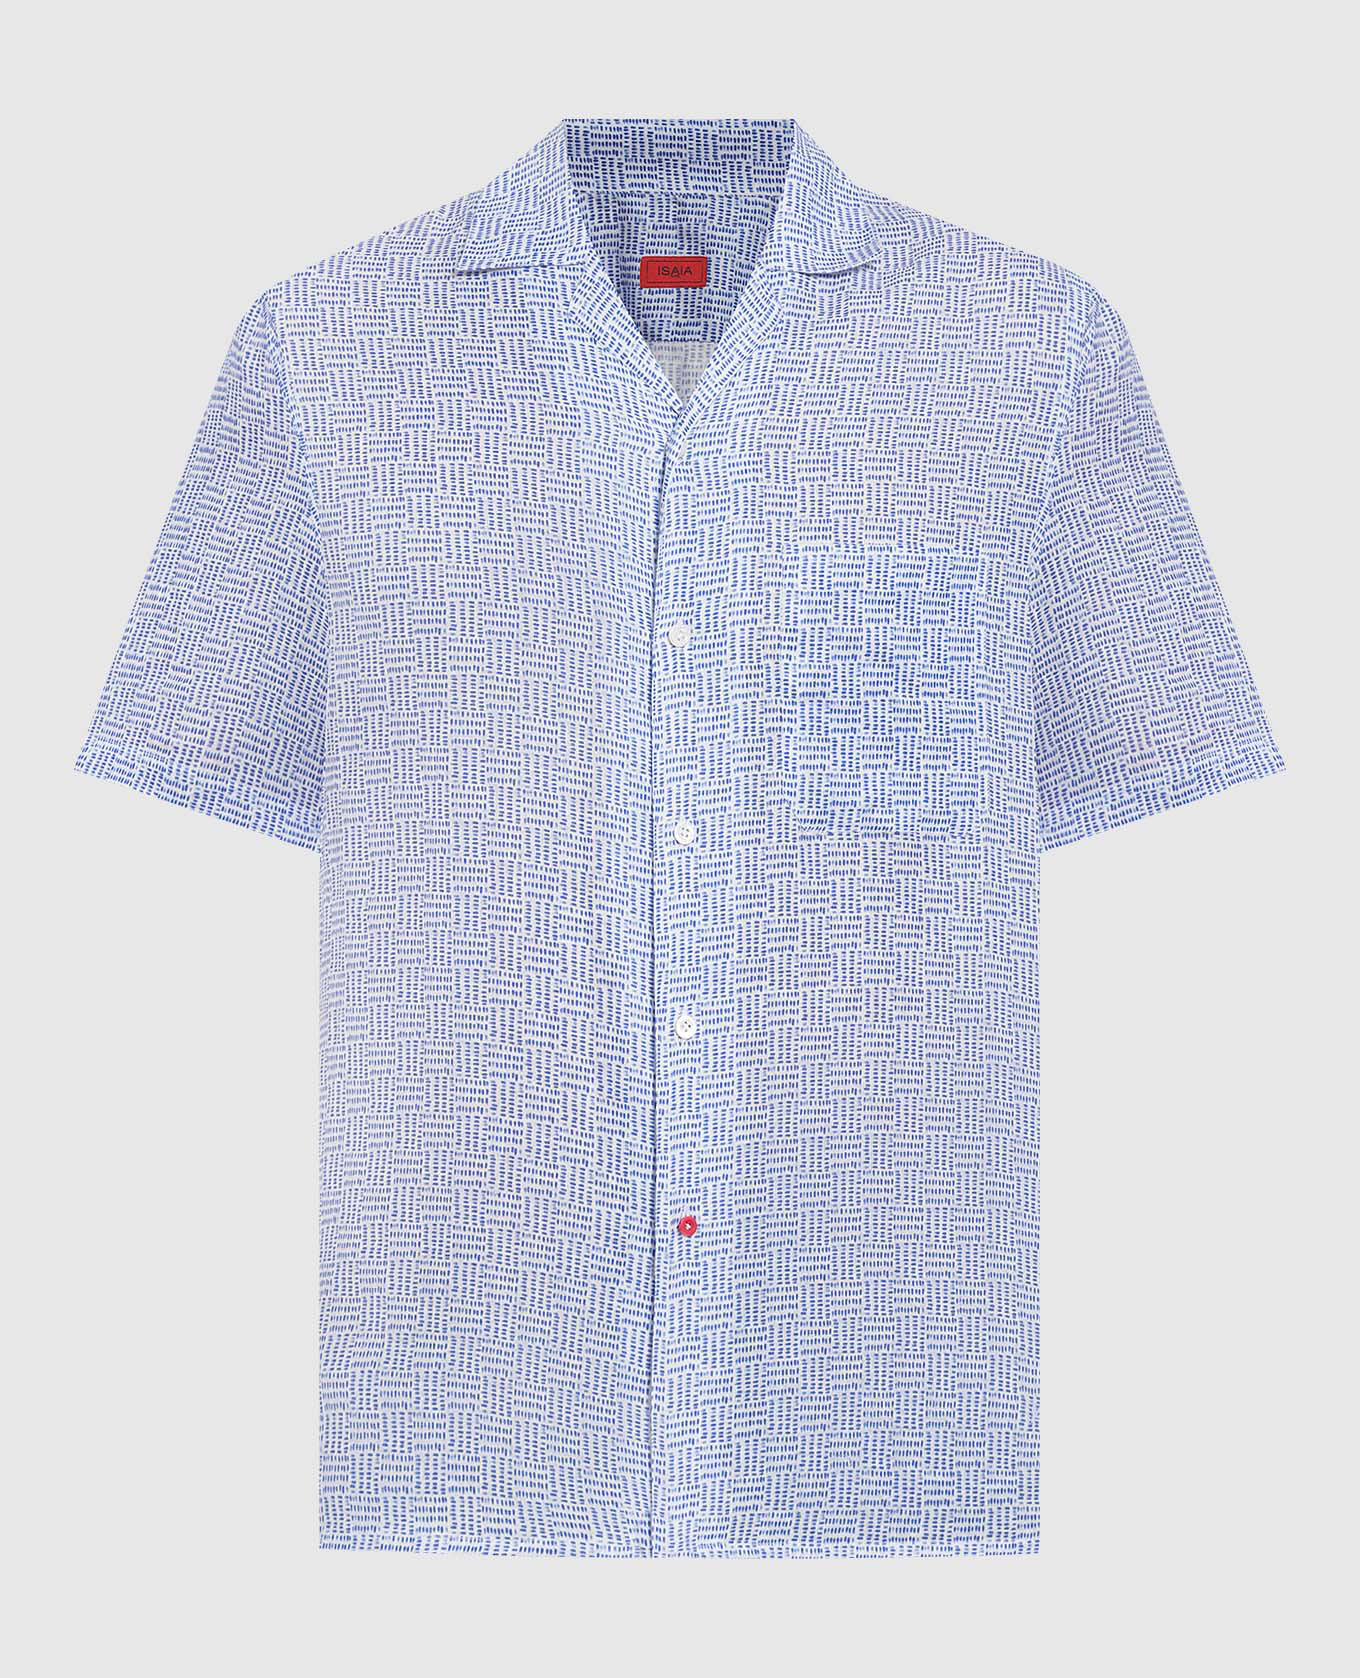 Голубая рубашка из льна в геометрический узор.